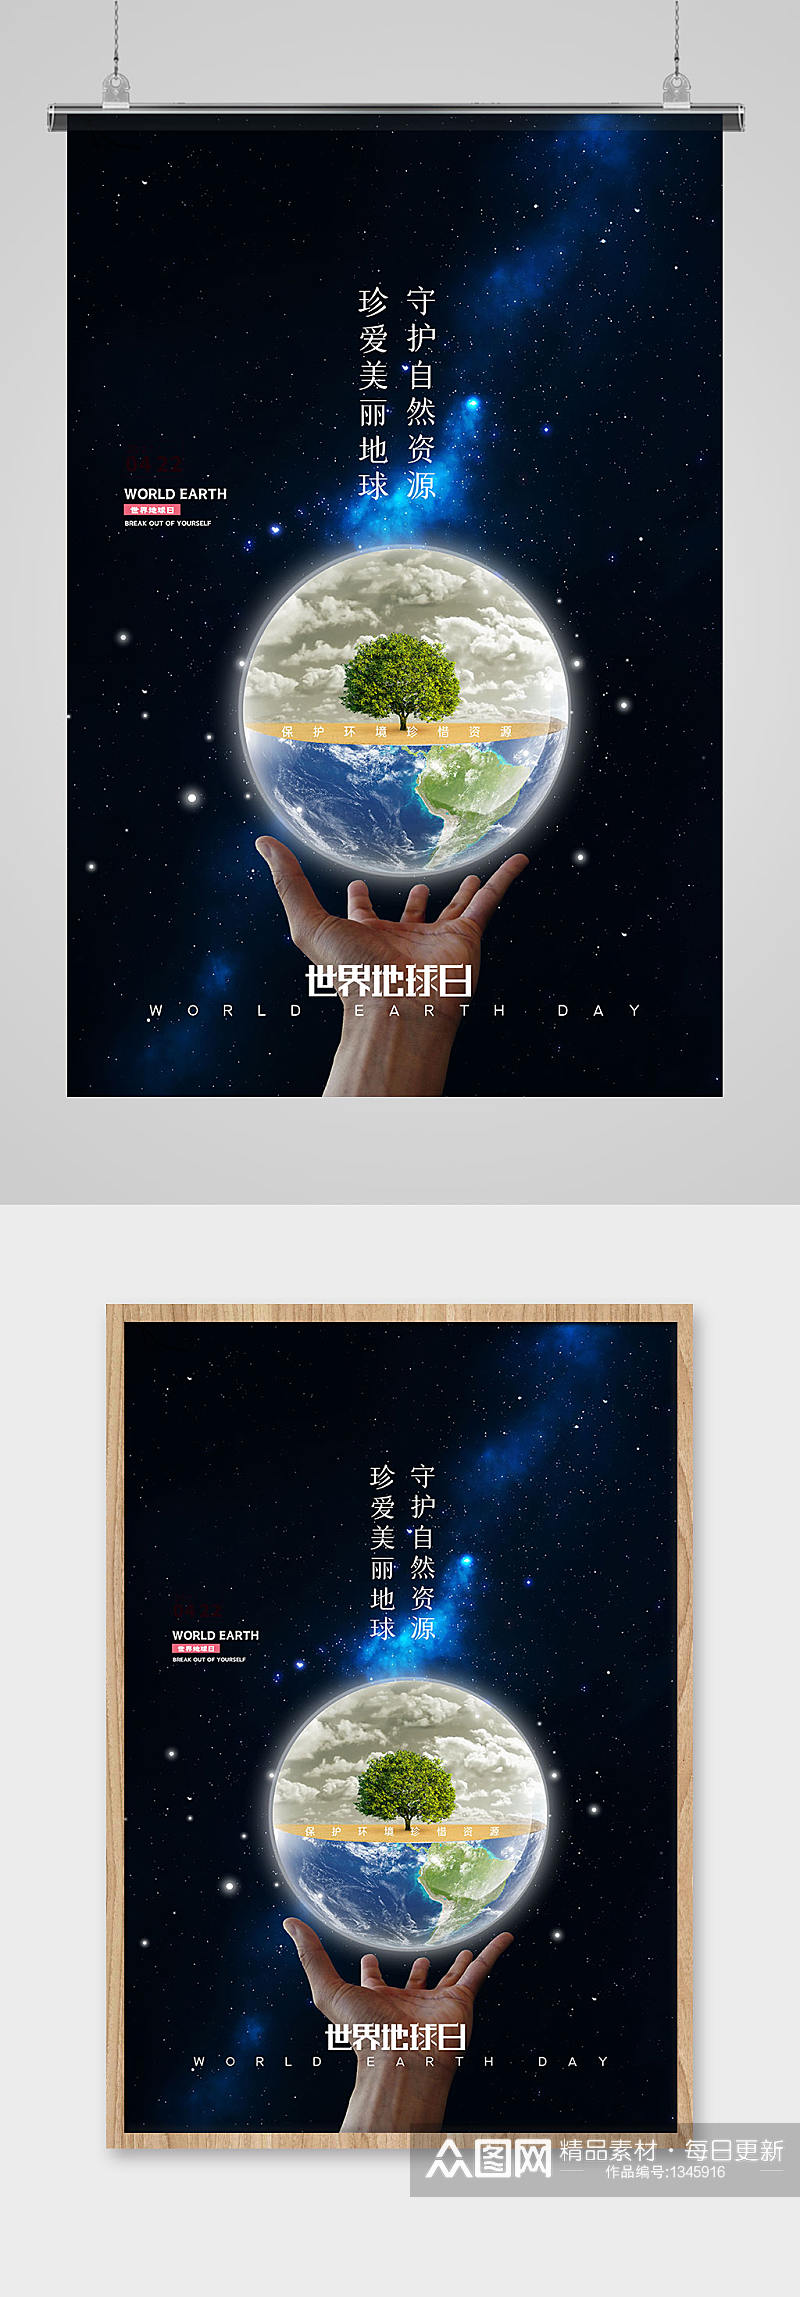 简约世界地球日节日宣传海报素材